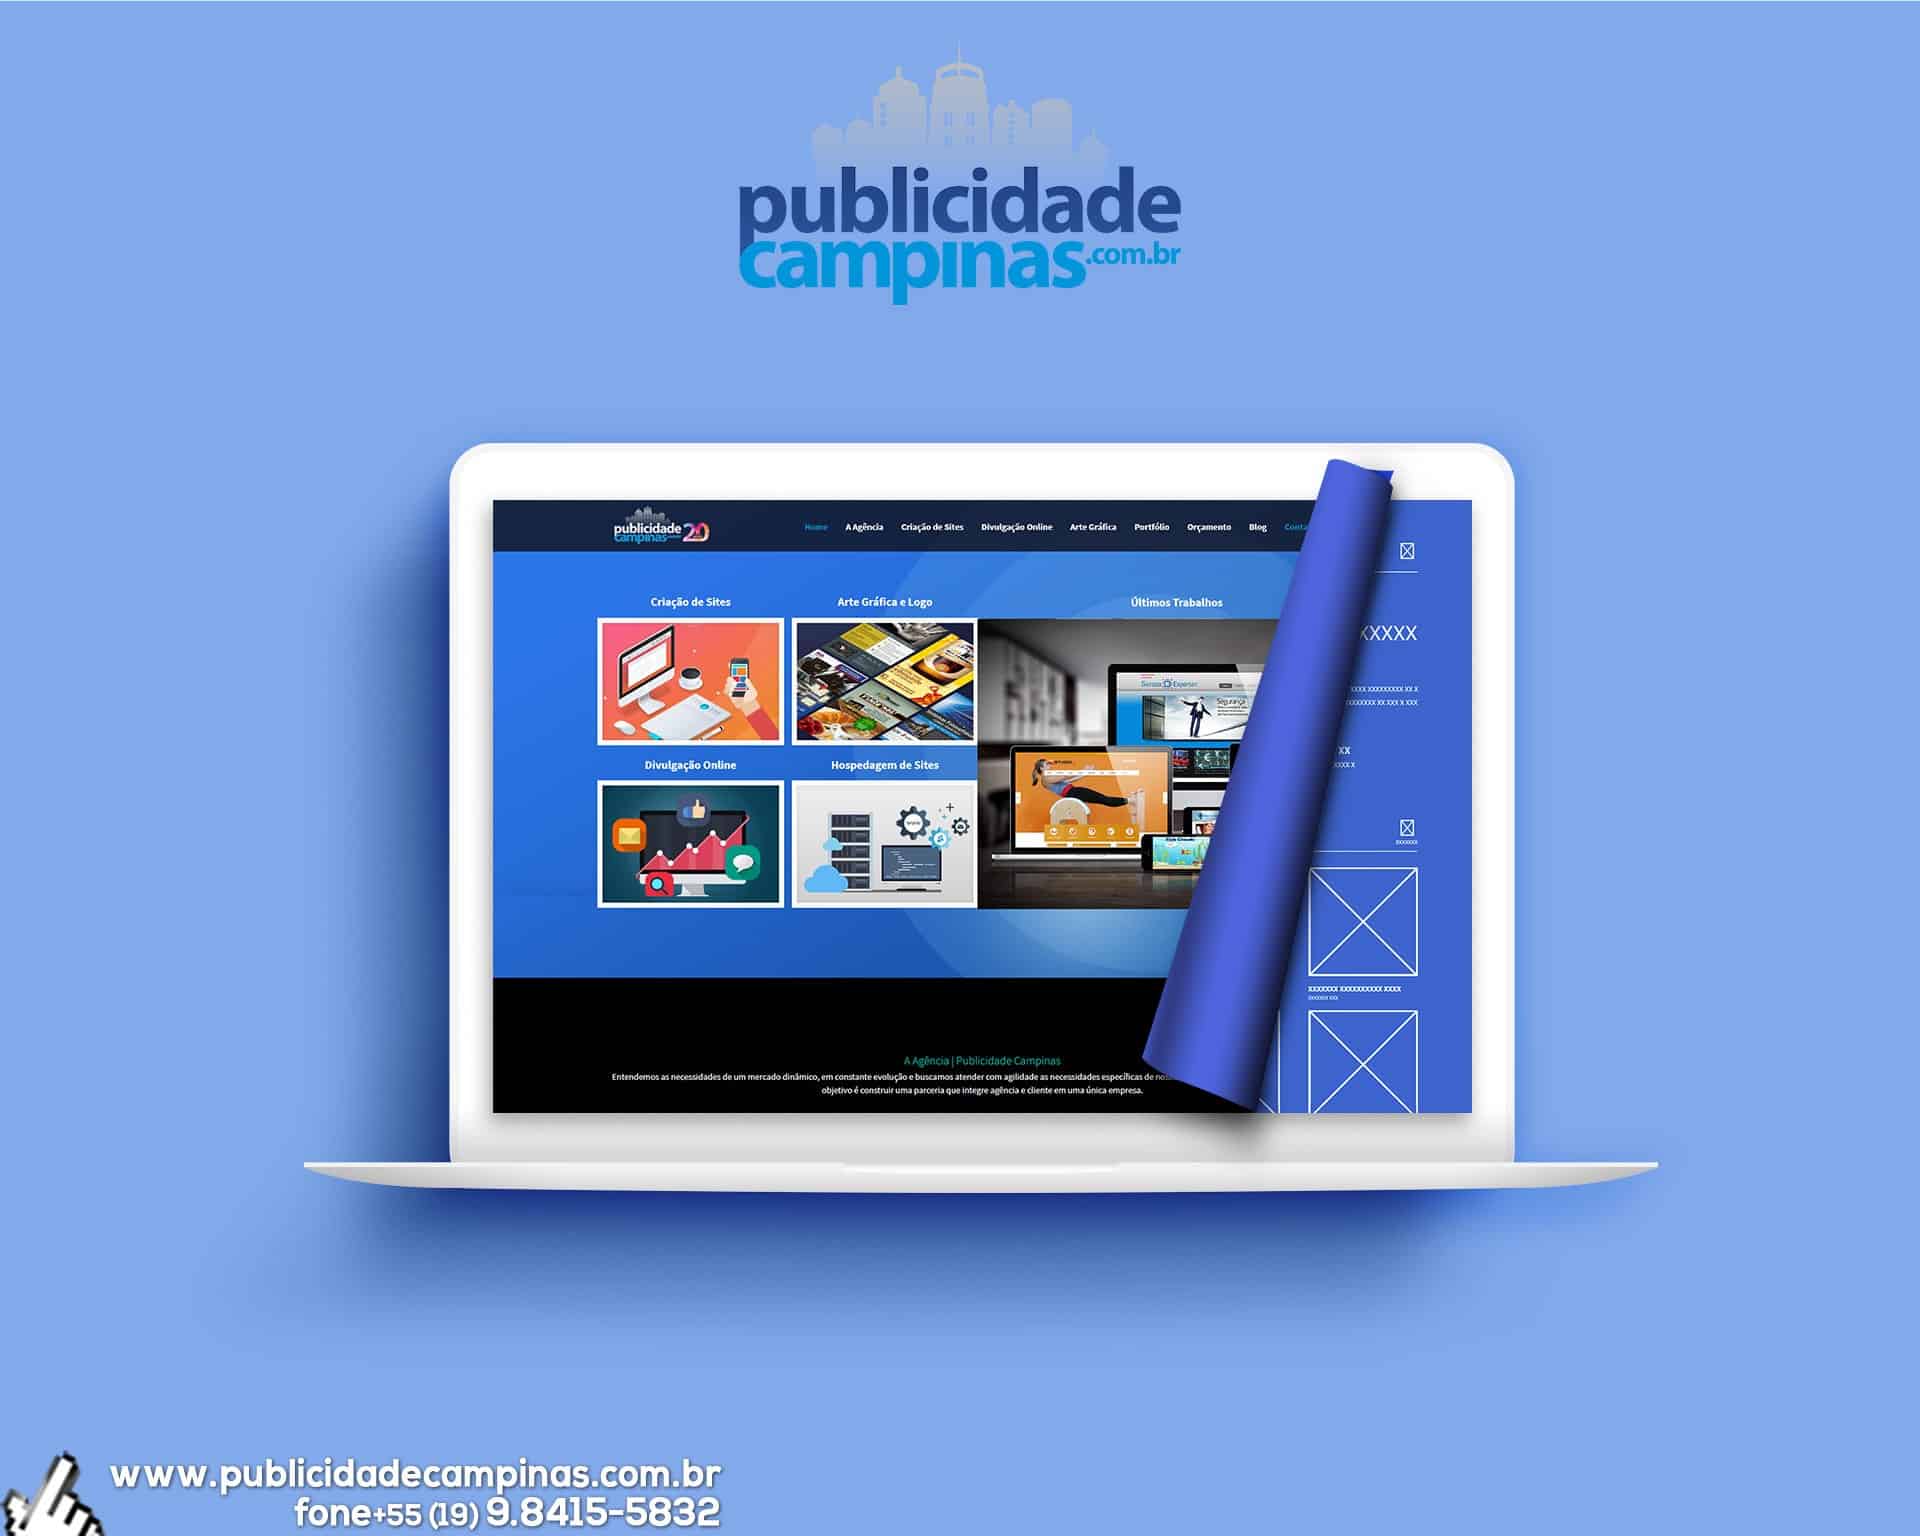 (c) Publicidadecampinas.com.br